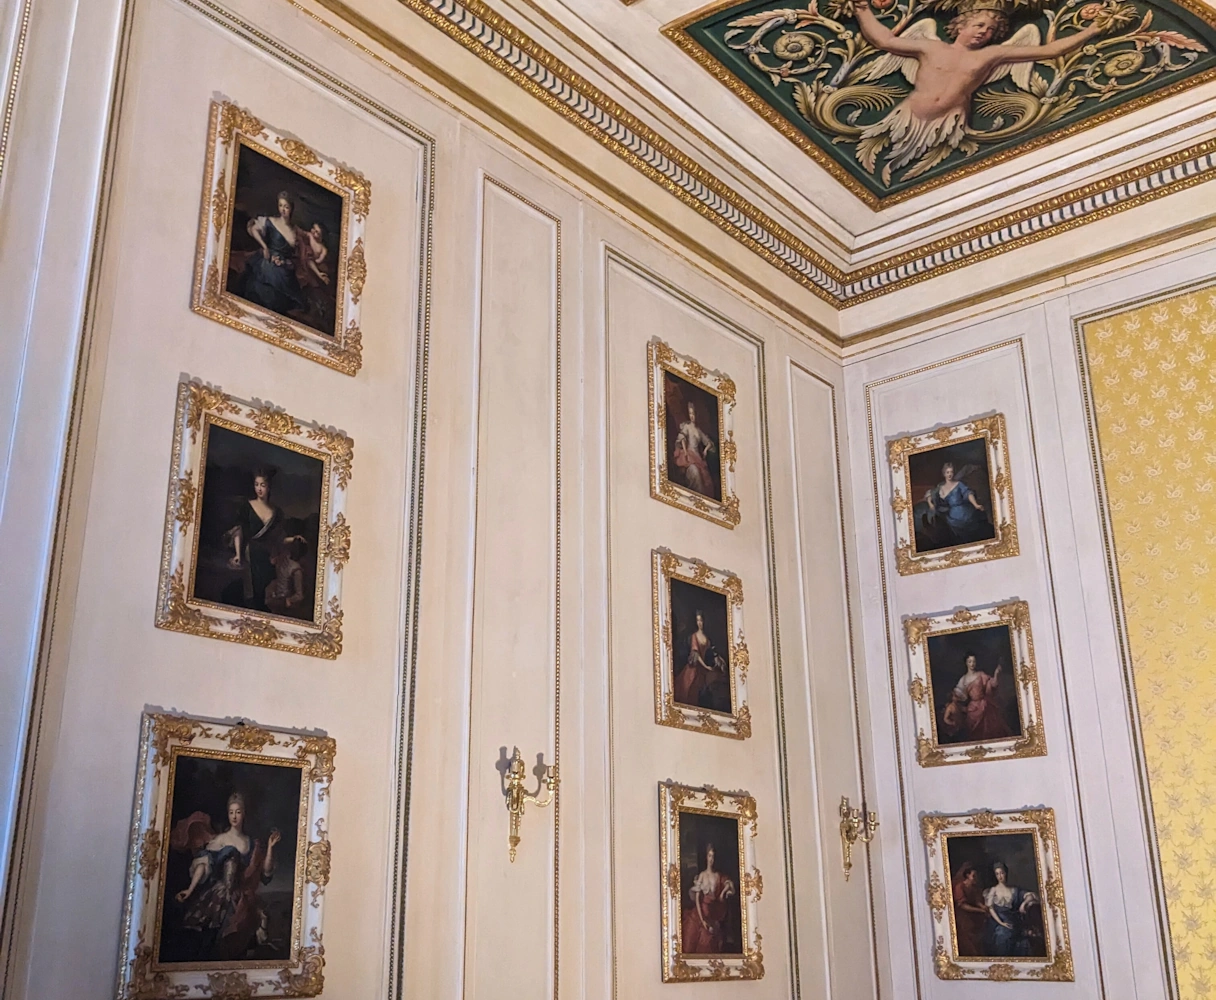 Schönheitsgalerie in Nymphenburg. Gemälde von Frauen die der damalige König als am schönsten empfunden hat